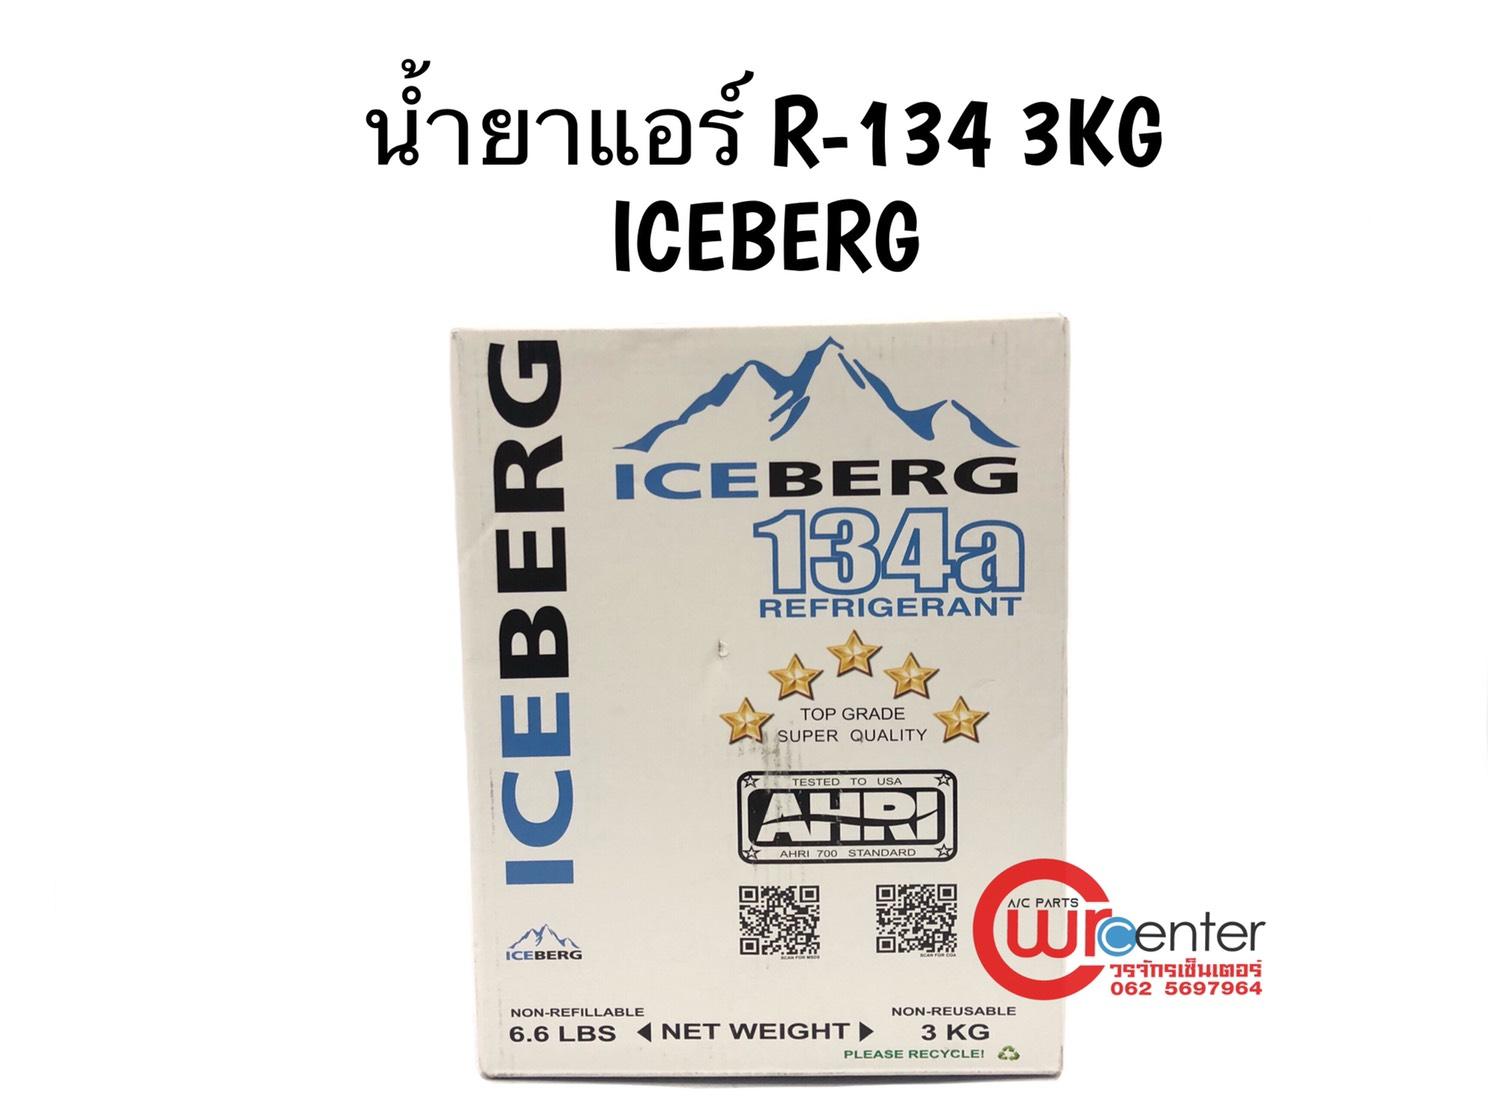 ข้อมูลประกอบของ น้ำยาแอร์รถยนต์ R-134 ICEBERG 3 kg. น้ำยาแอร์